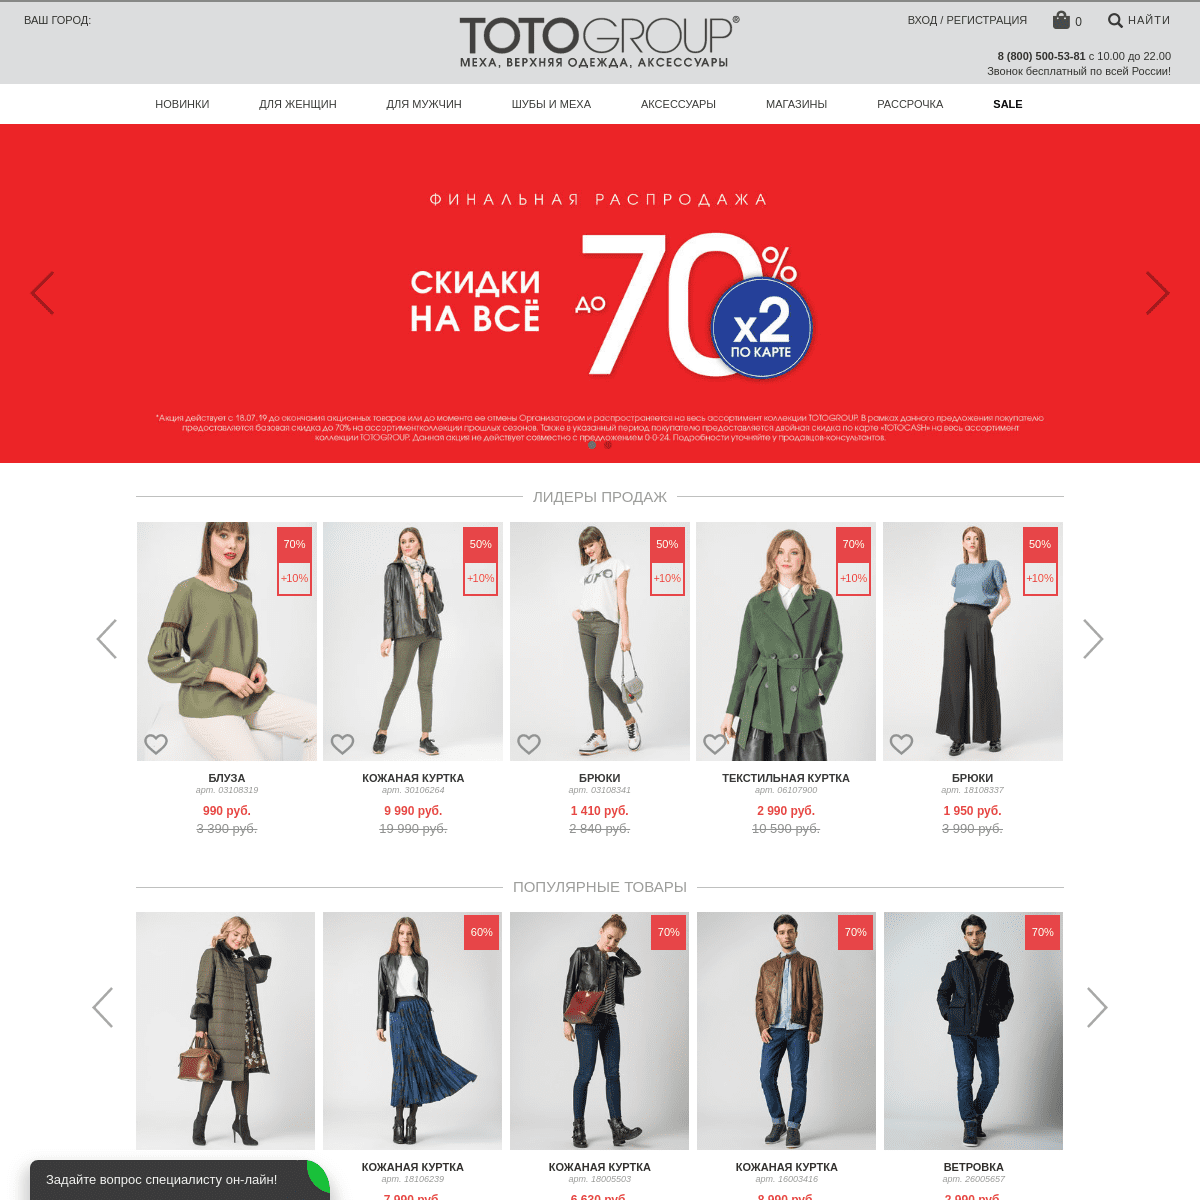 TOTOGROUP - сеть магазинов модной женской и мужской одежды. Шубы, дубленки, меховые жилеты, кожаные куртки и пальто, экокожа, пу